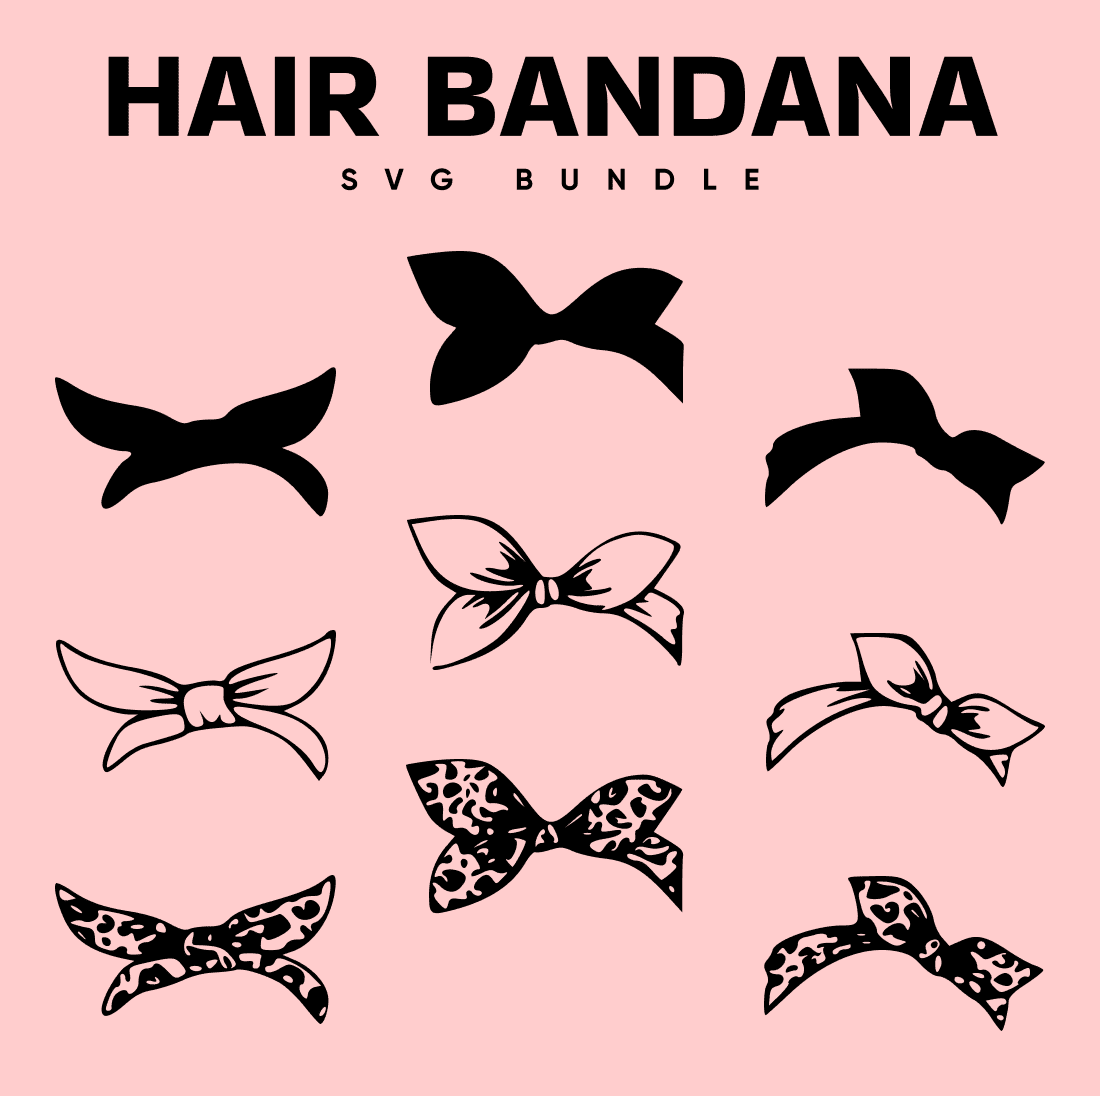 Hair Bandana SVG - main image preview.